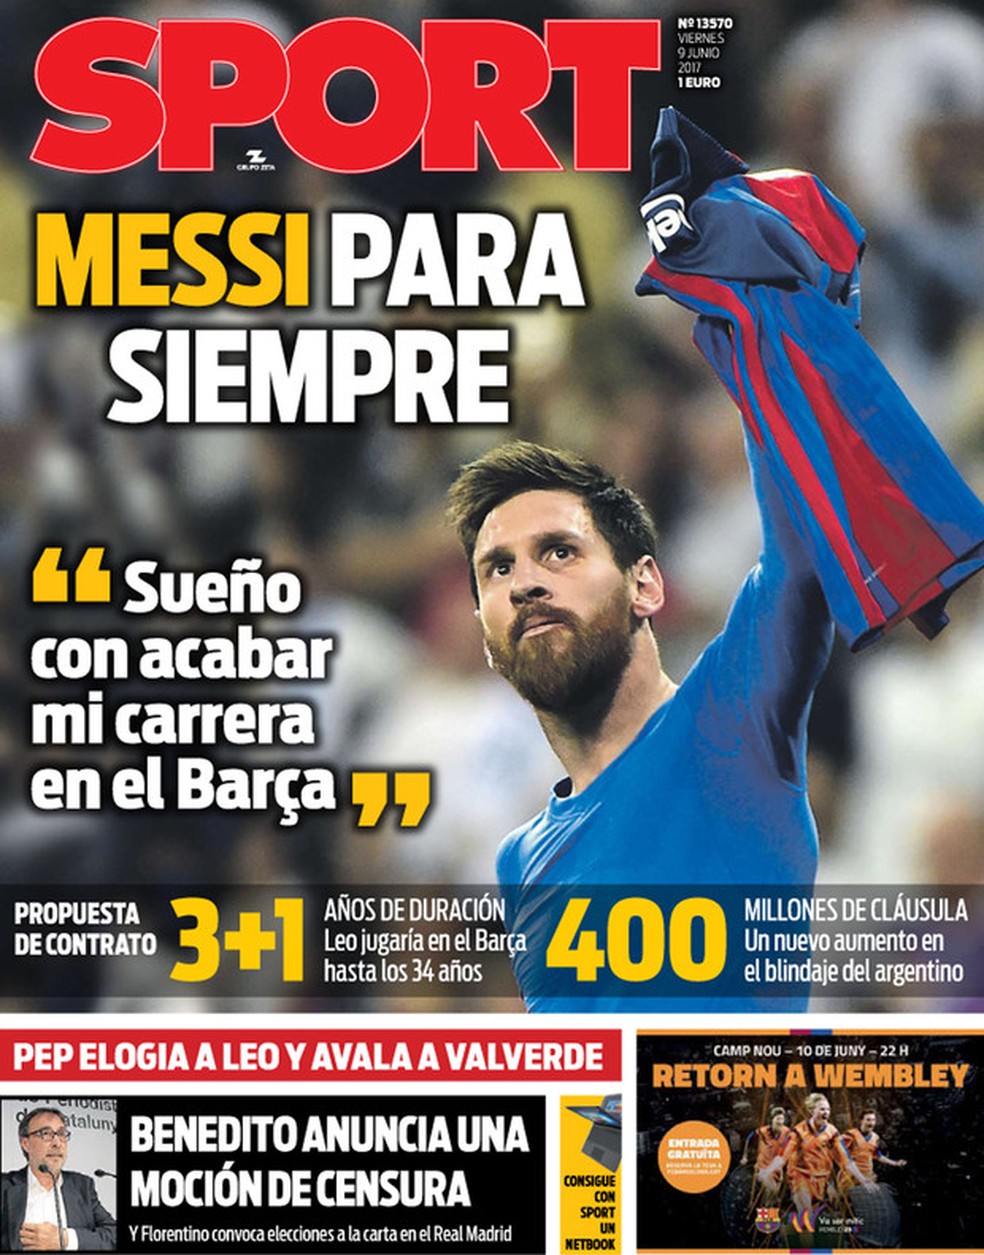 Capa do jornal Sport (Foto: Reprodução)